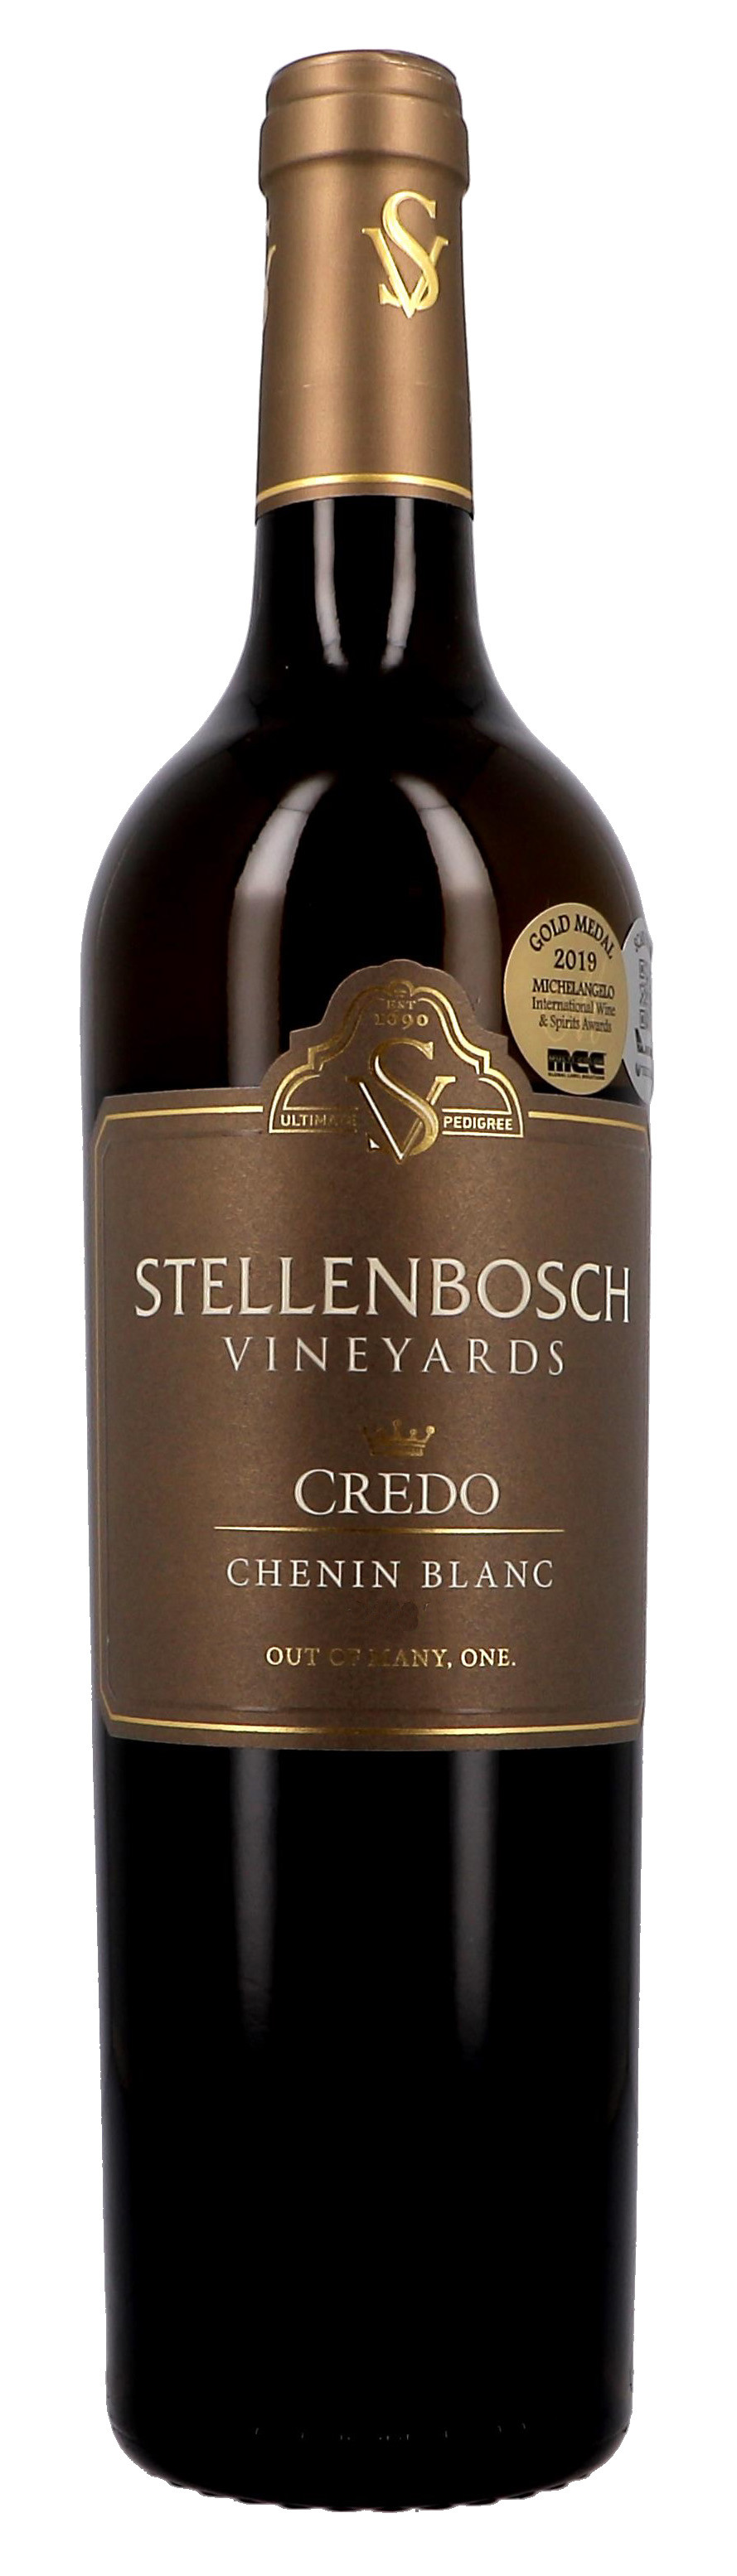 Credo Chenin Blanc 75cl Stellenbosch Vineyards (Wijnen)